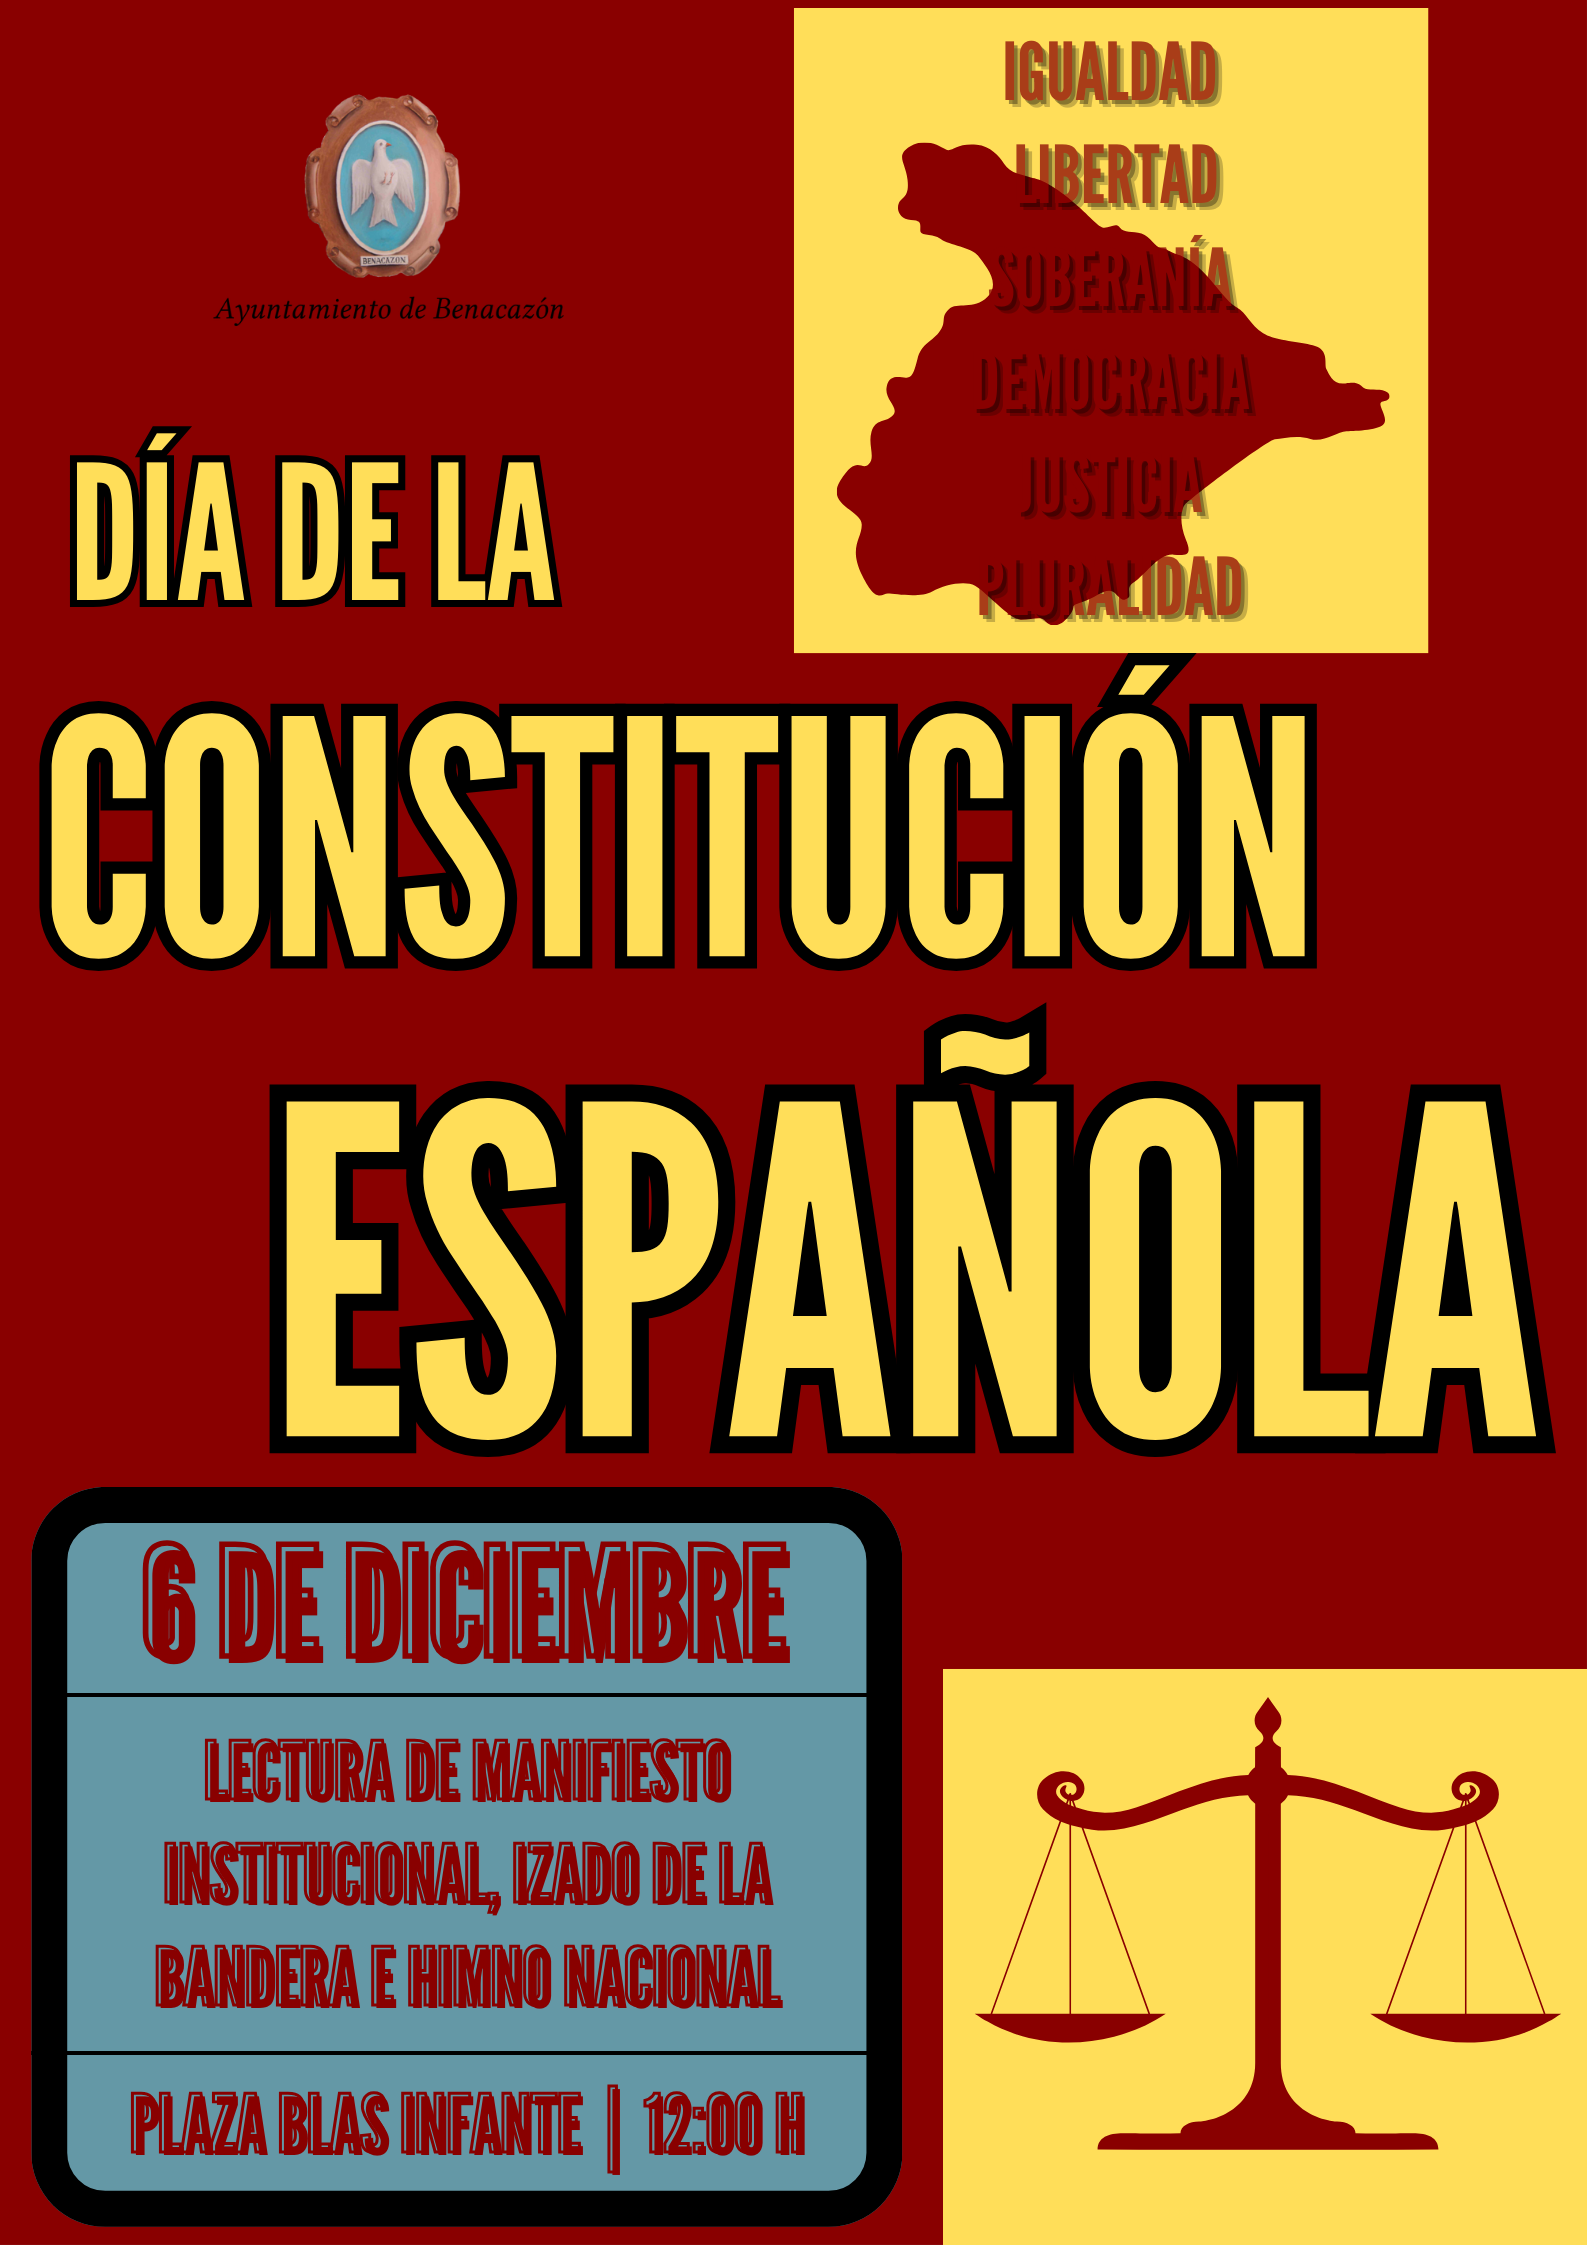 Día de la Constitución Española – Peace and Cooperation